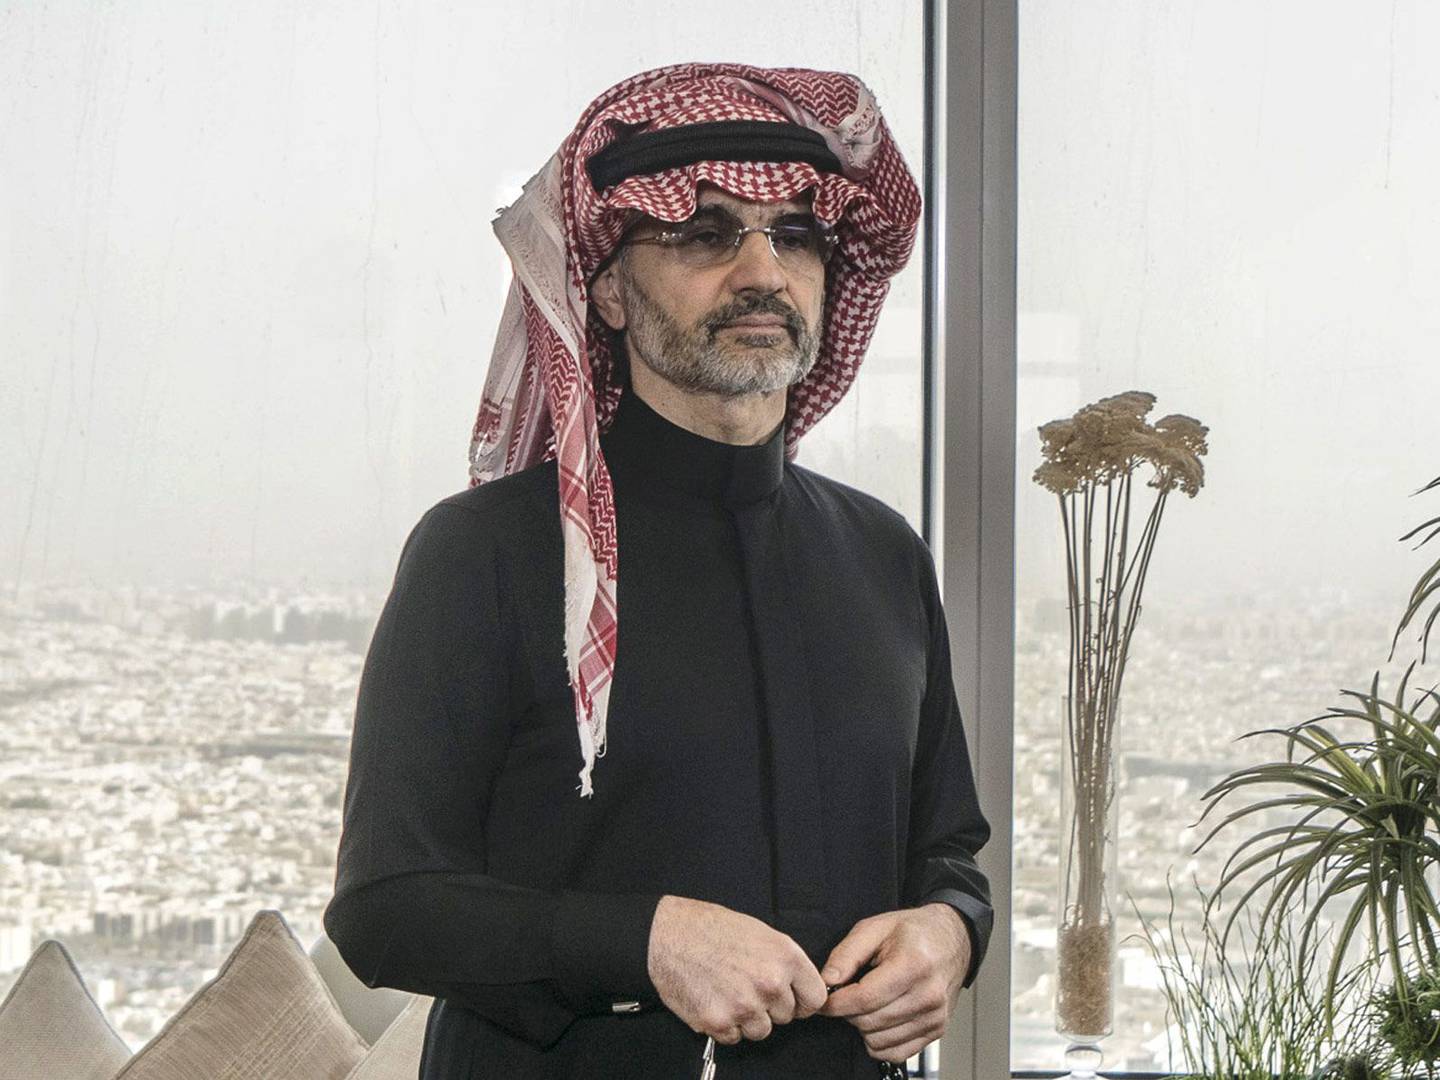 El príncipe Alwaleed Bin Talal, multimillonario saudí y fundador de Kingdom Holding Co, posa para una fotografía en la oficina del ático de Kingdom Holding Co, tras su liberación de 83 días de detención en el hotel Ritz-Carlton en Riad, Arabia Saudí, el domingo 18 de marzo de 2018.